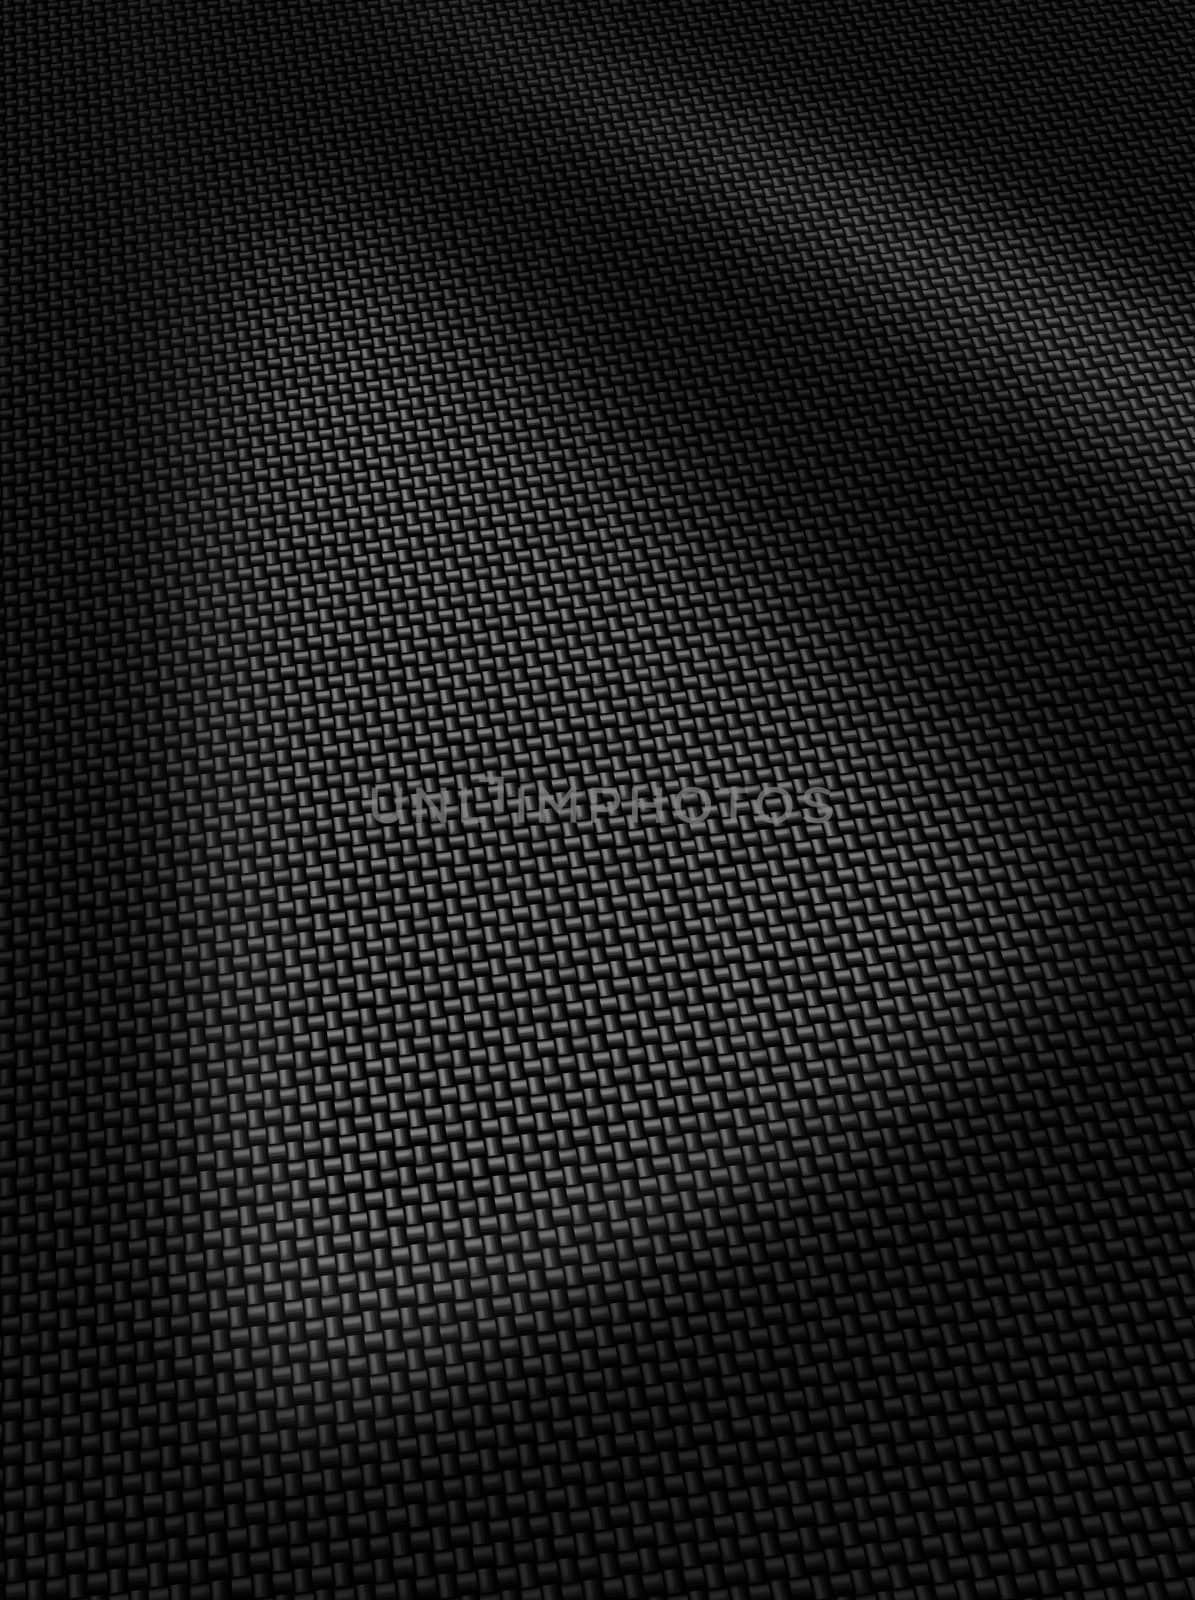 Woven black carbon fibre surface texture vertical